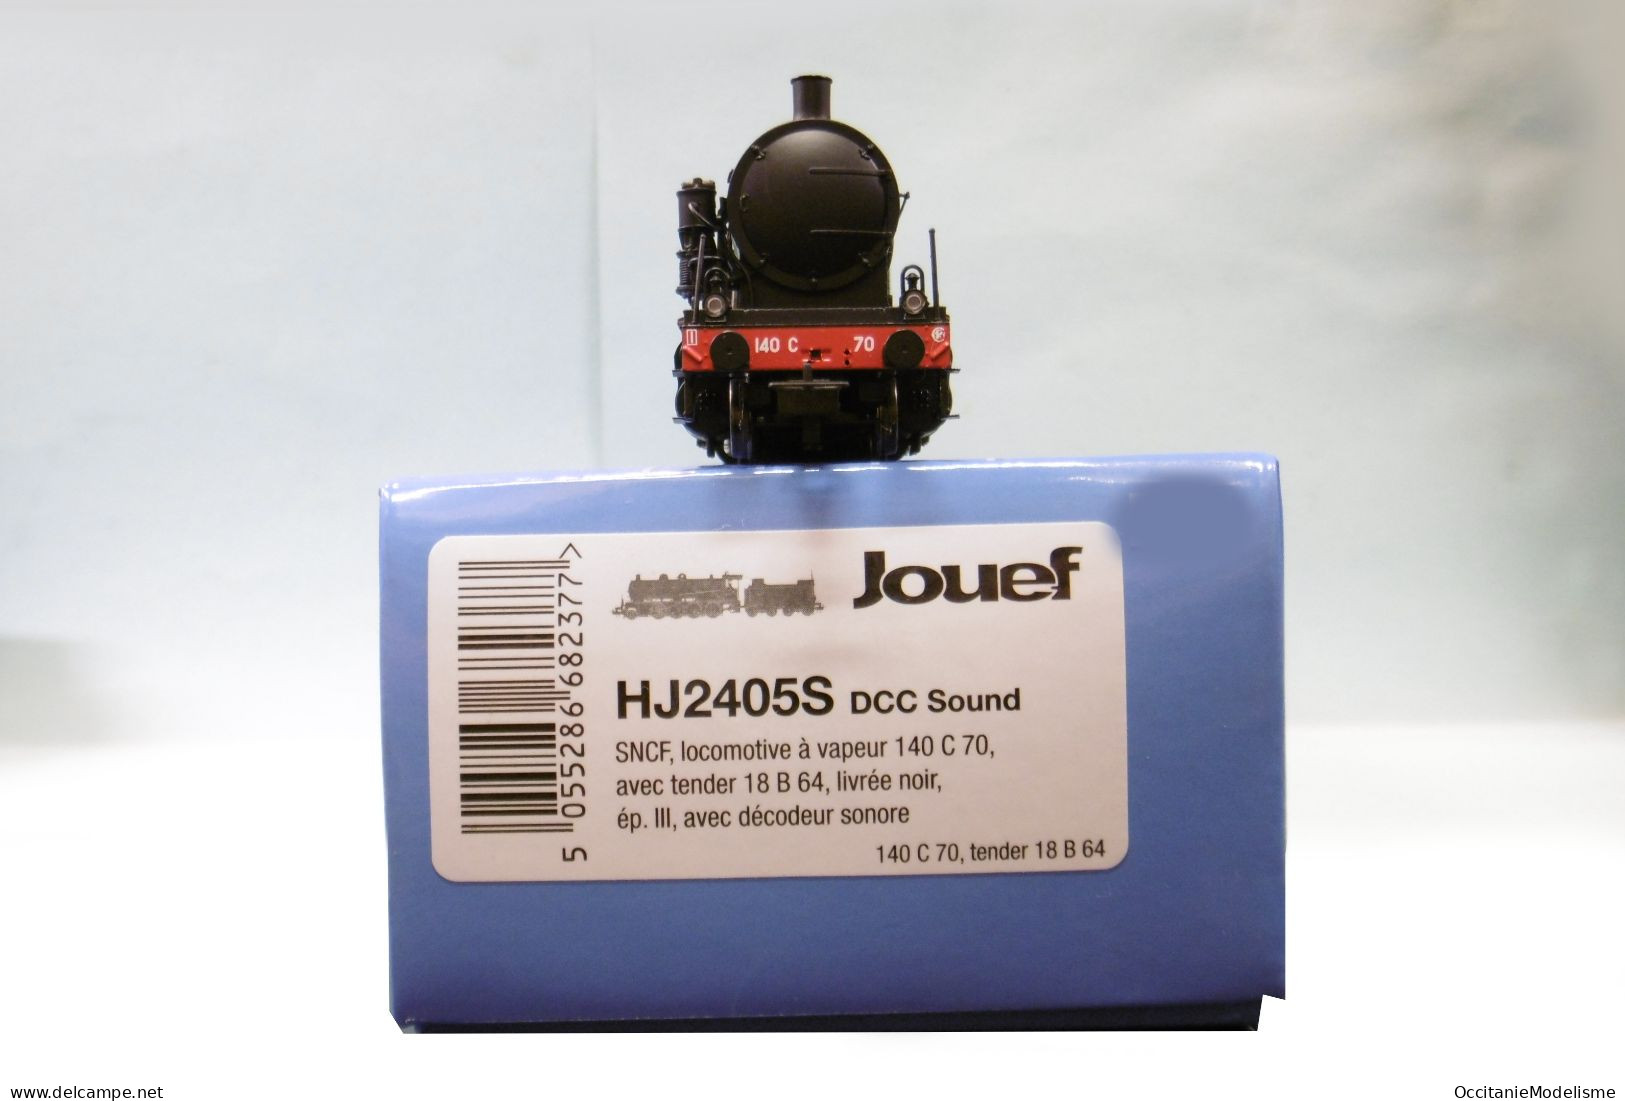 Jouef - Locomotive vapeur 140 C 70 noir filets rouges DCC Sound ép. III réf. HJ2405S HO 1/87